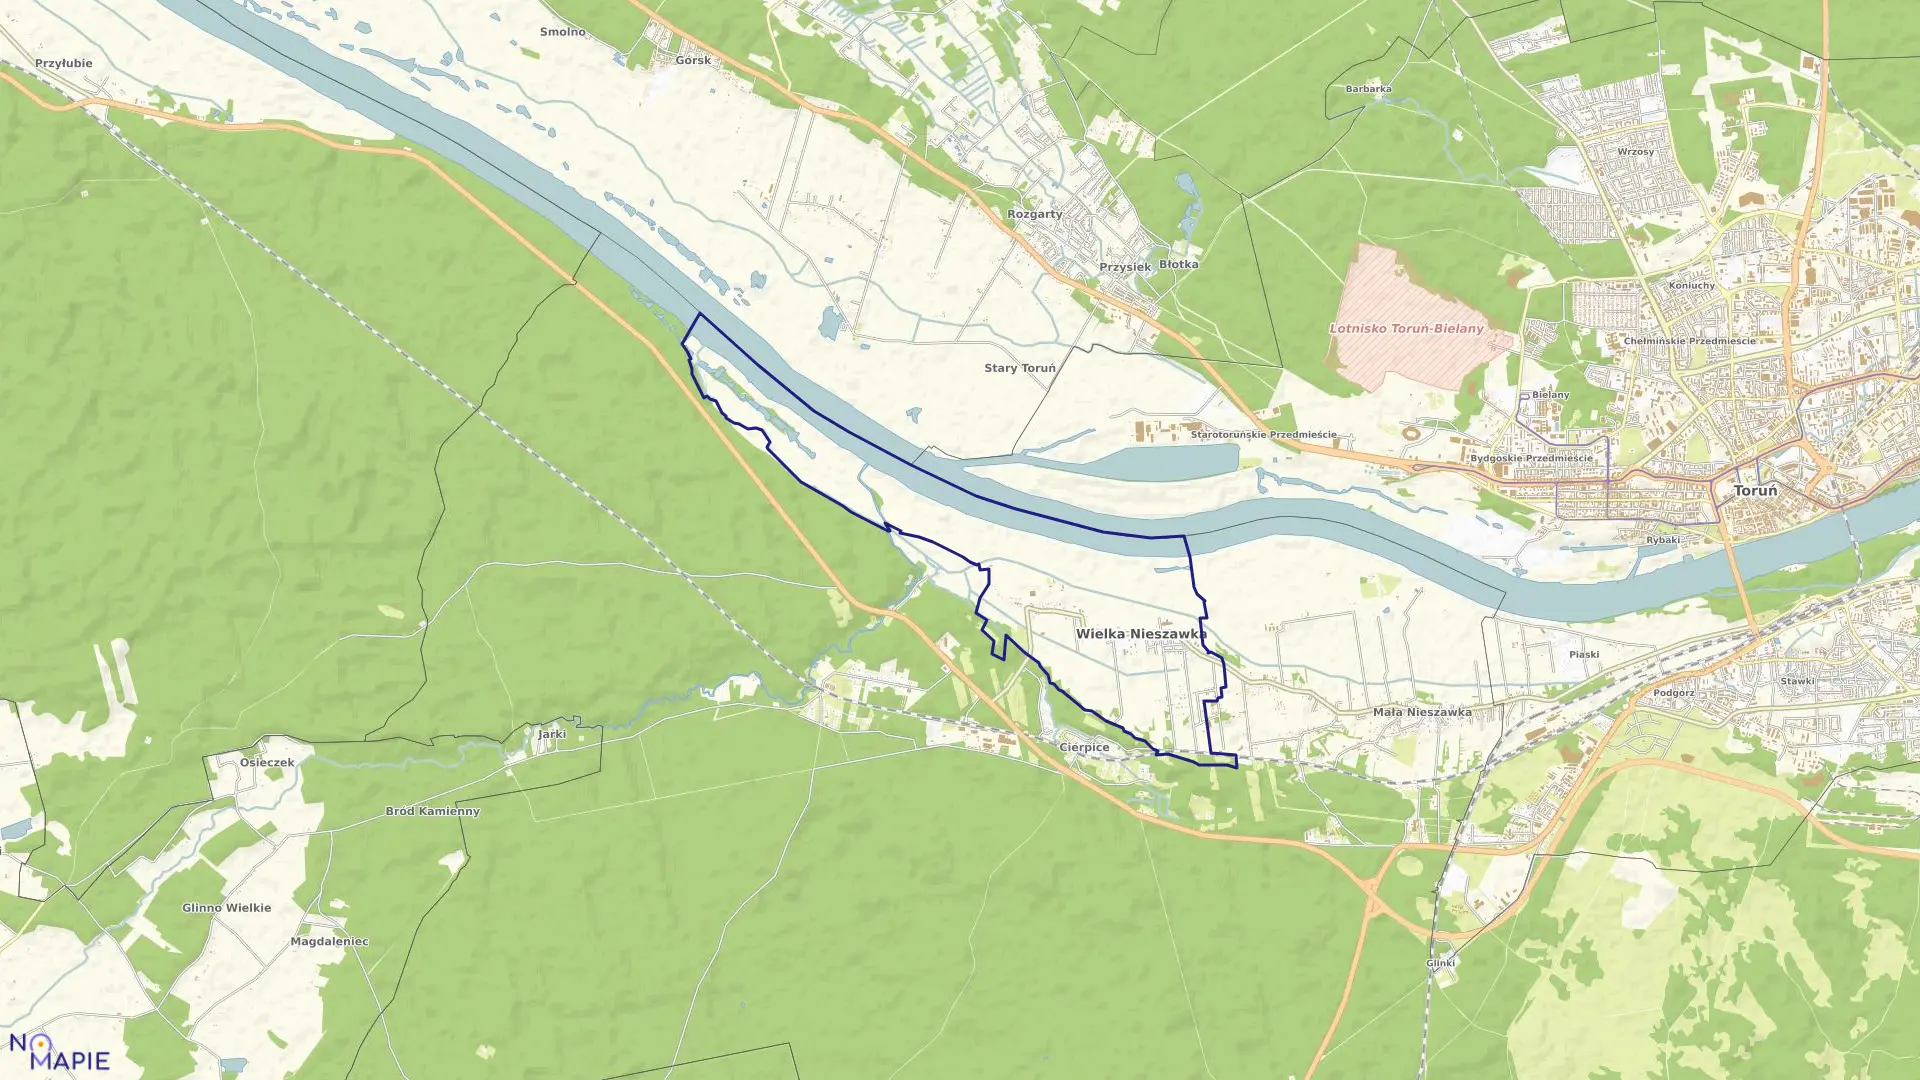 Mapa obrębu Wielka Nieszawka w gminie Wielka Nieszawka